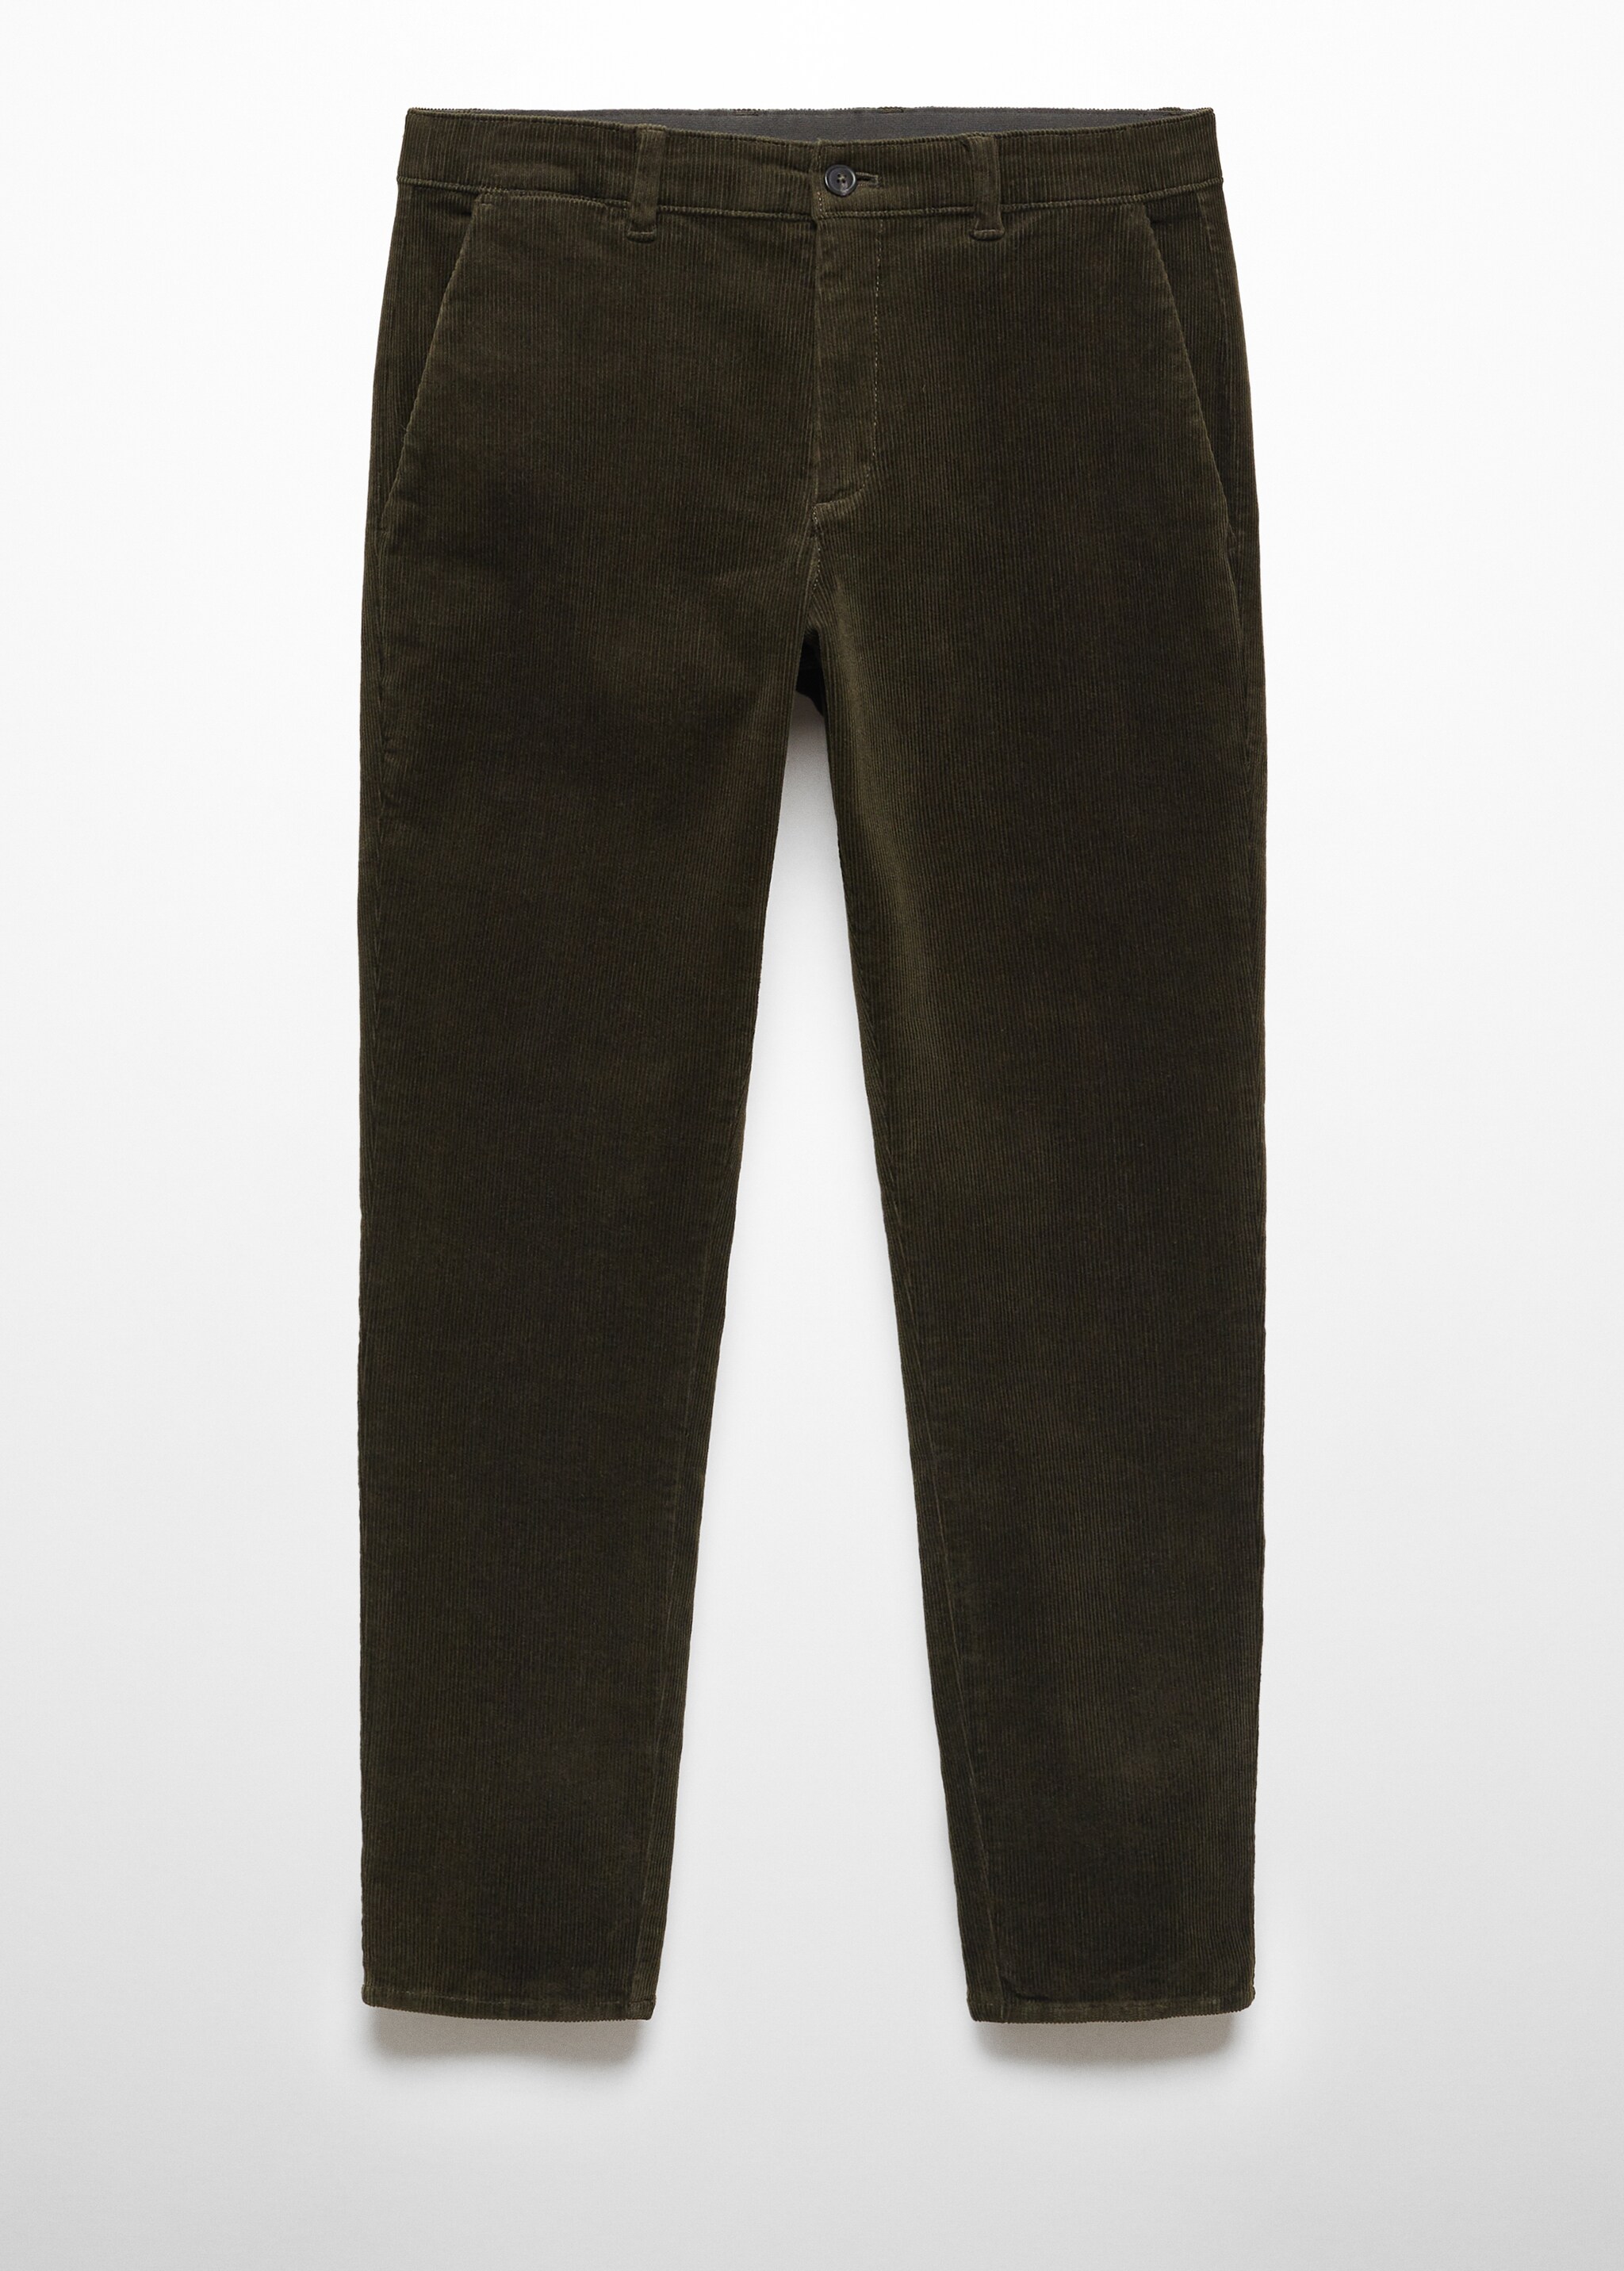 Pantalon velours côtelé slim-fit cordon - Article sans modèle